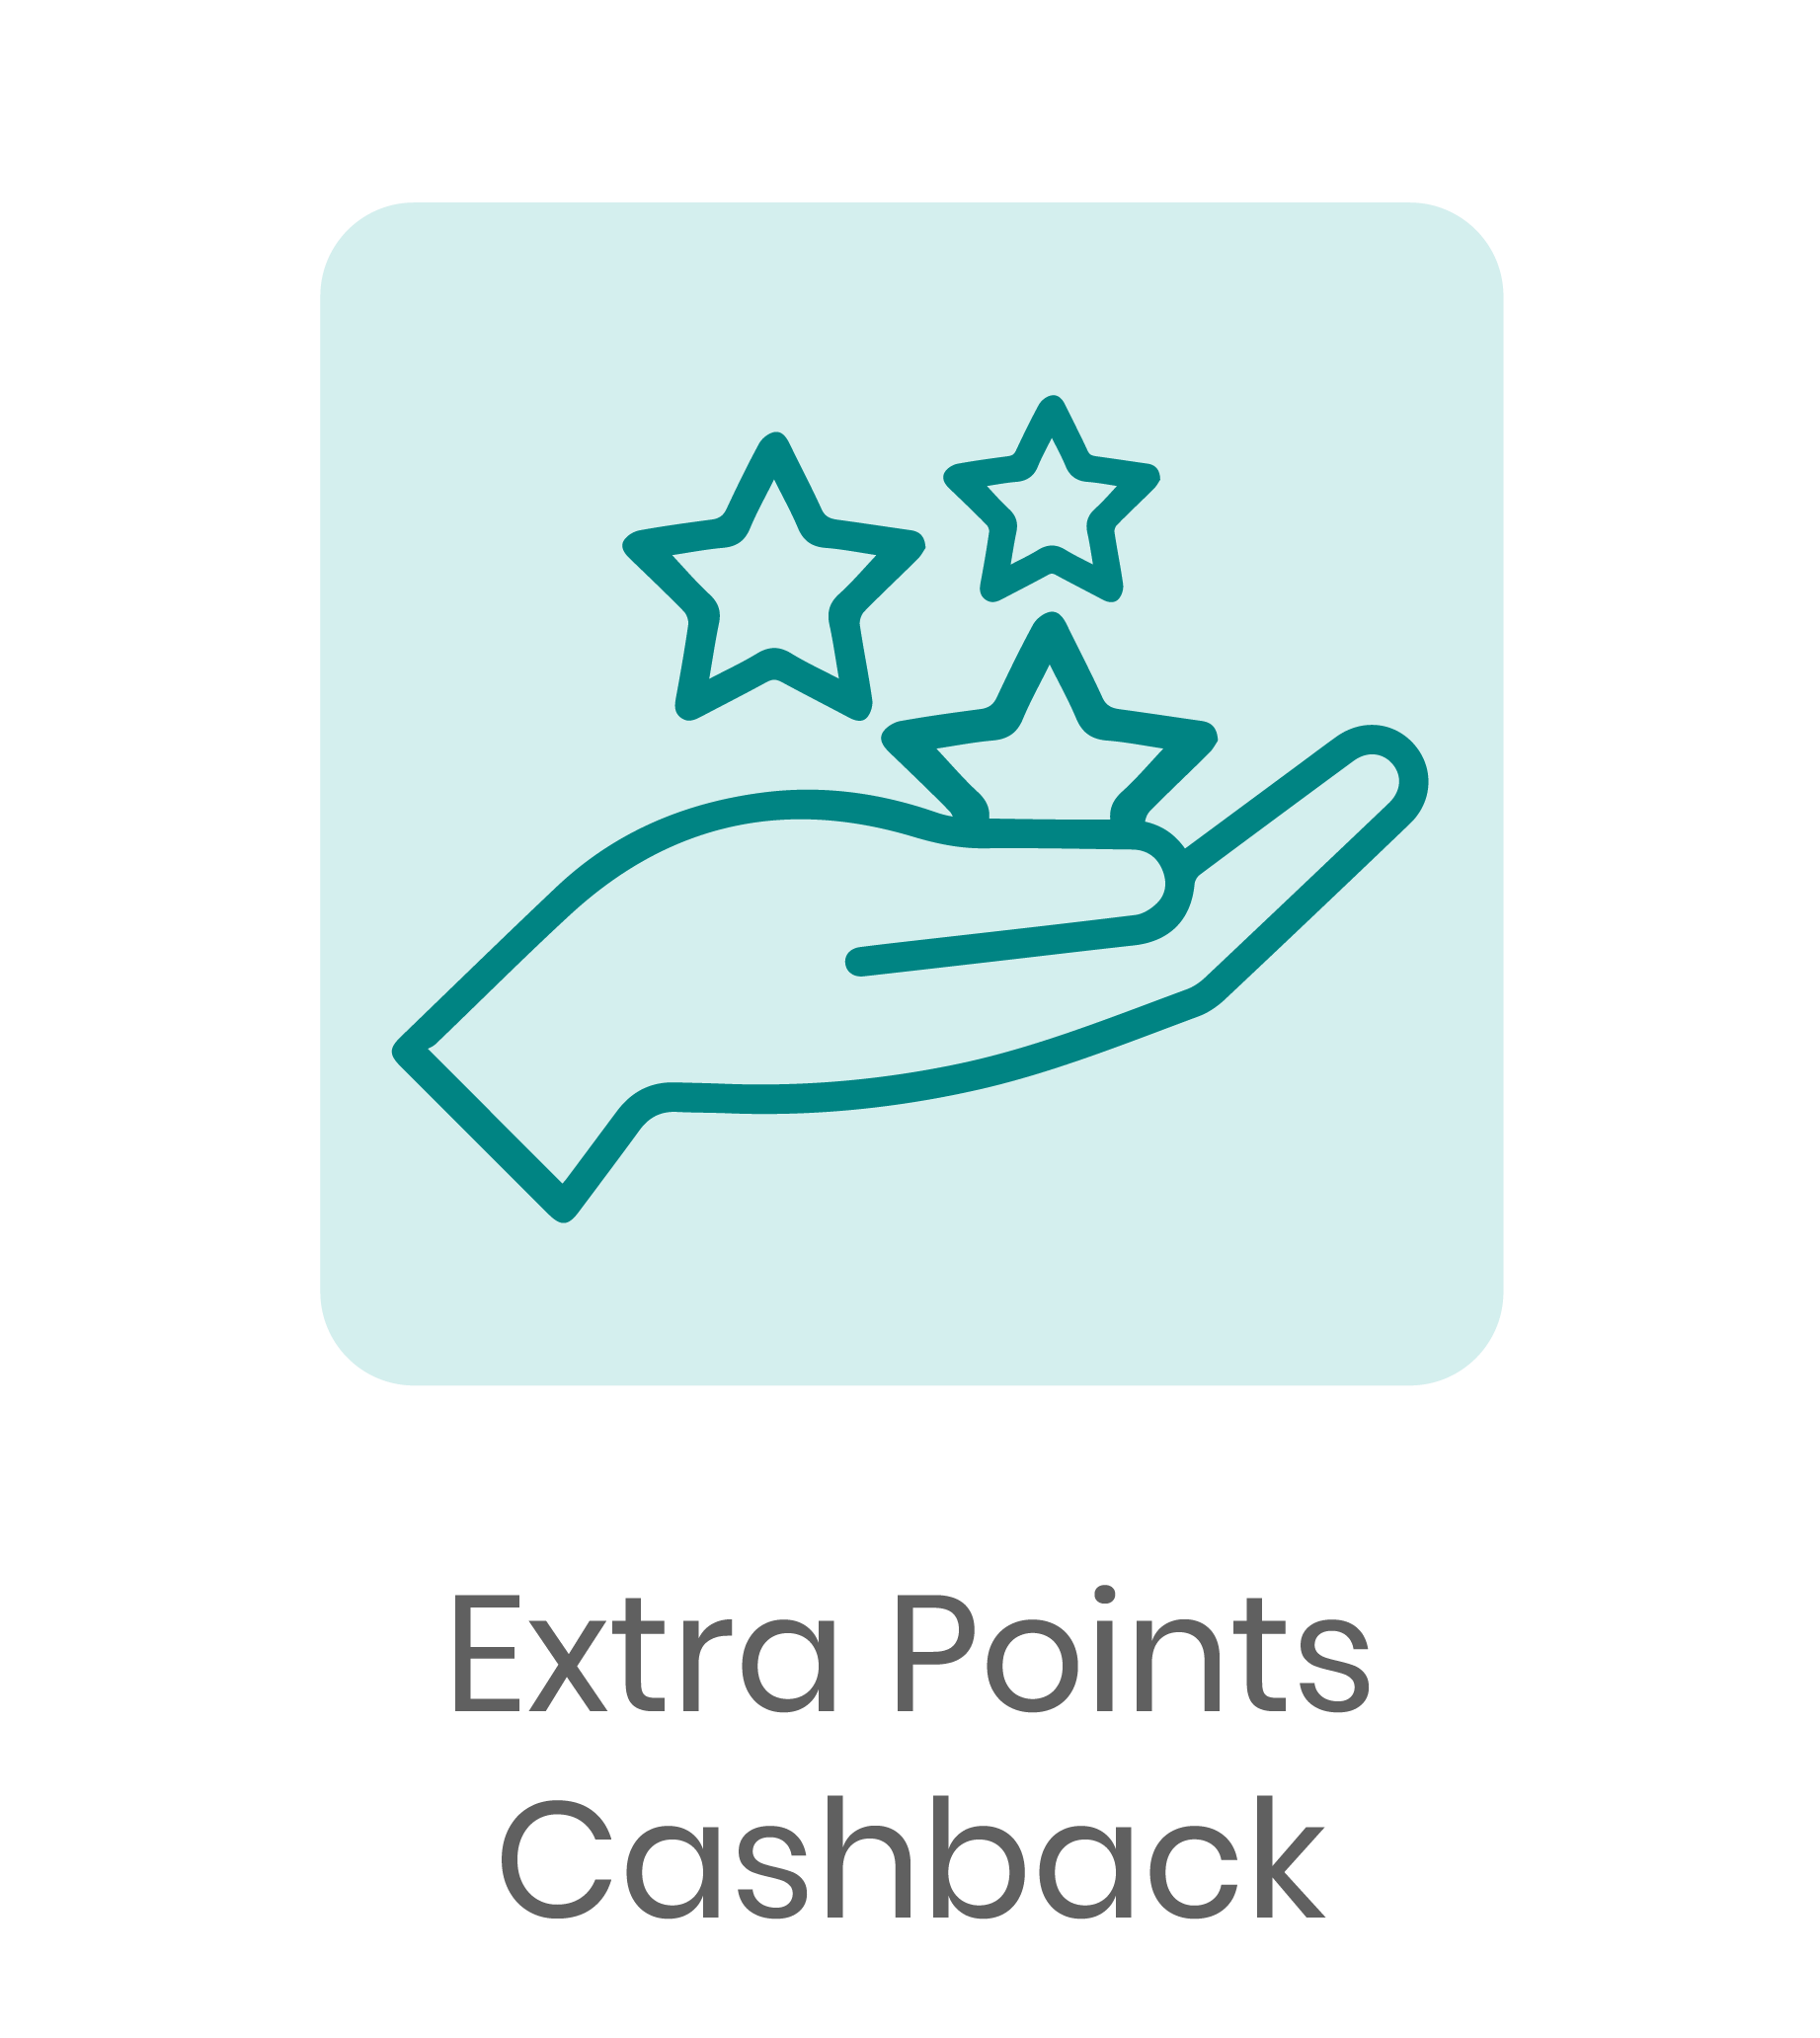 Extra Points Cashback